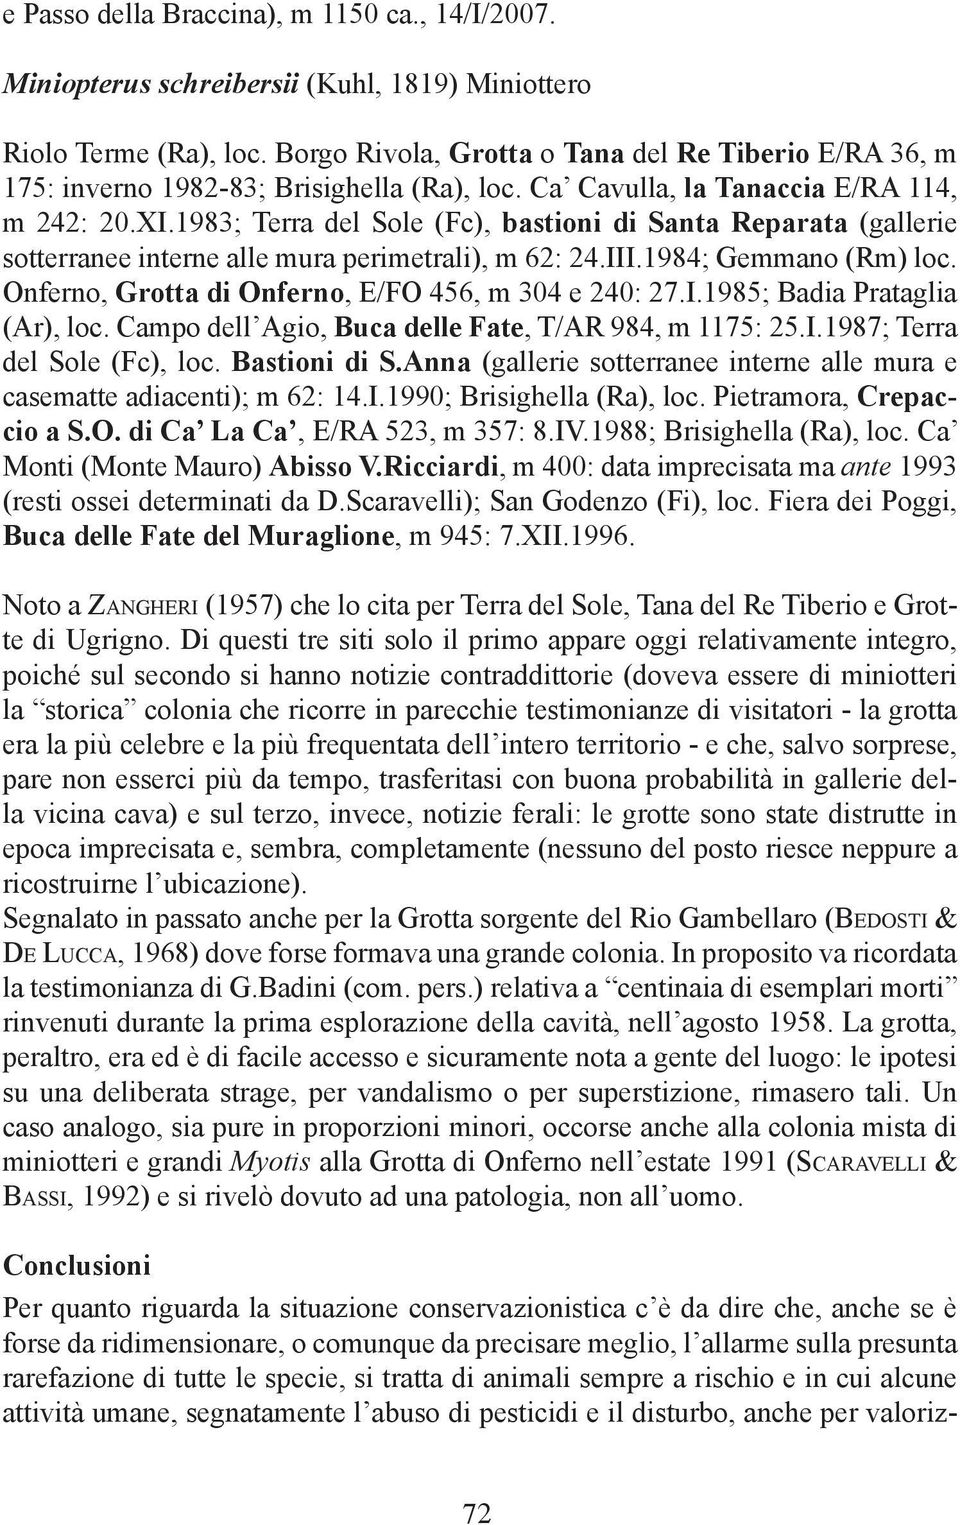 1983; Terra del Sole (Fc), bastioni di Santa Reparata (gallerie sotterranee interne alle mura perimetrali), m 62: 24.III.1984; Gemmano (Rm) loc. Onferno, Grotta di Onferno, E/FO 456, m 304 e 240: 27.